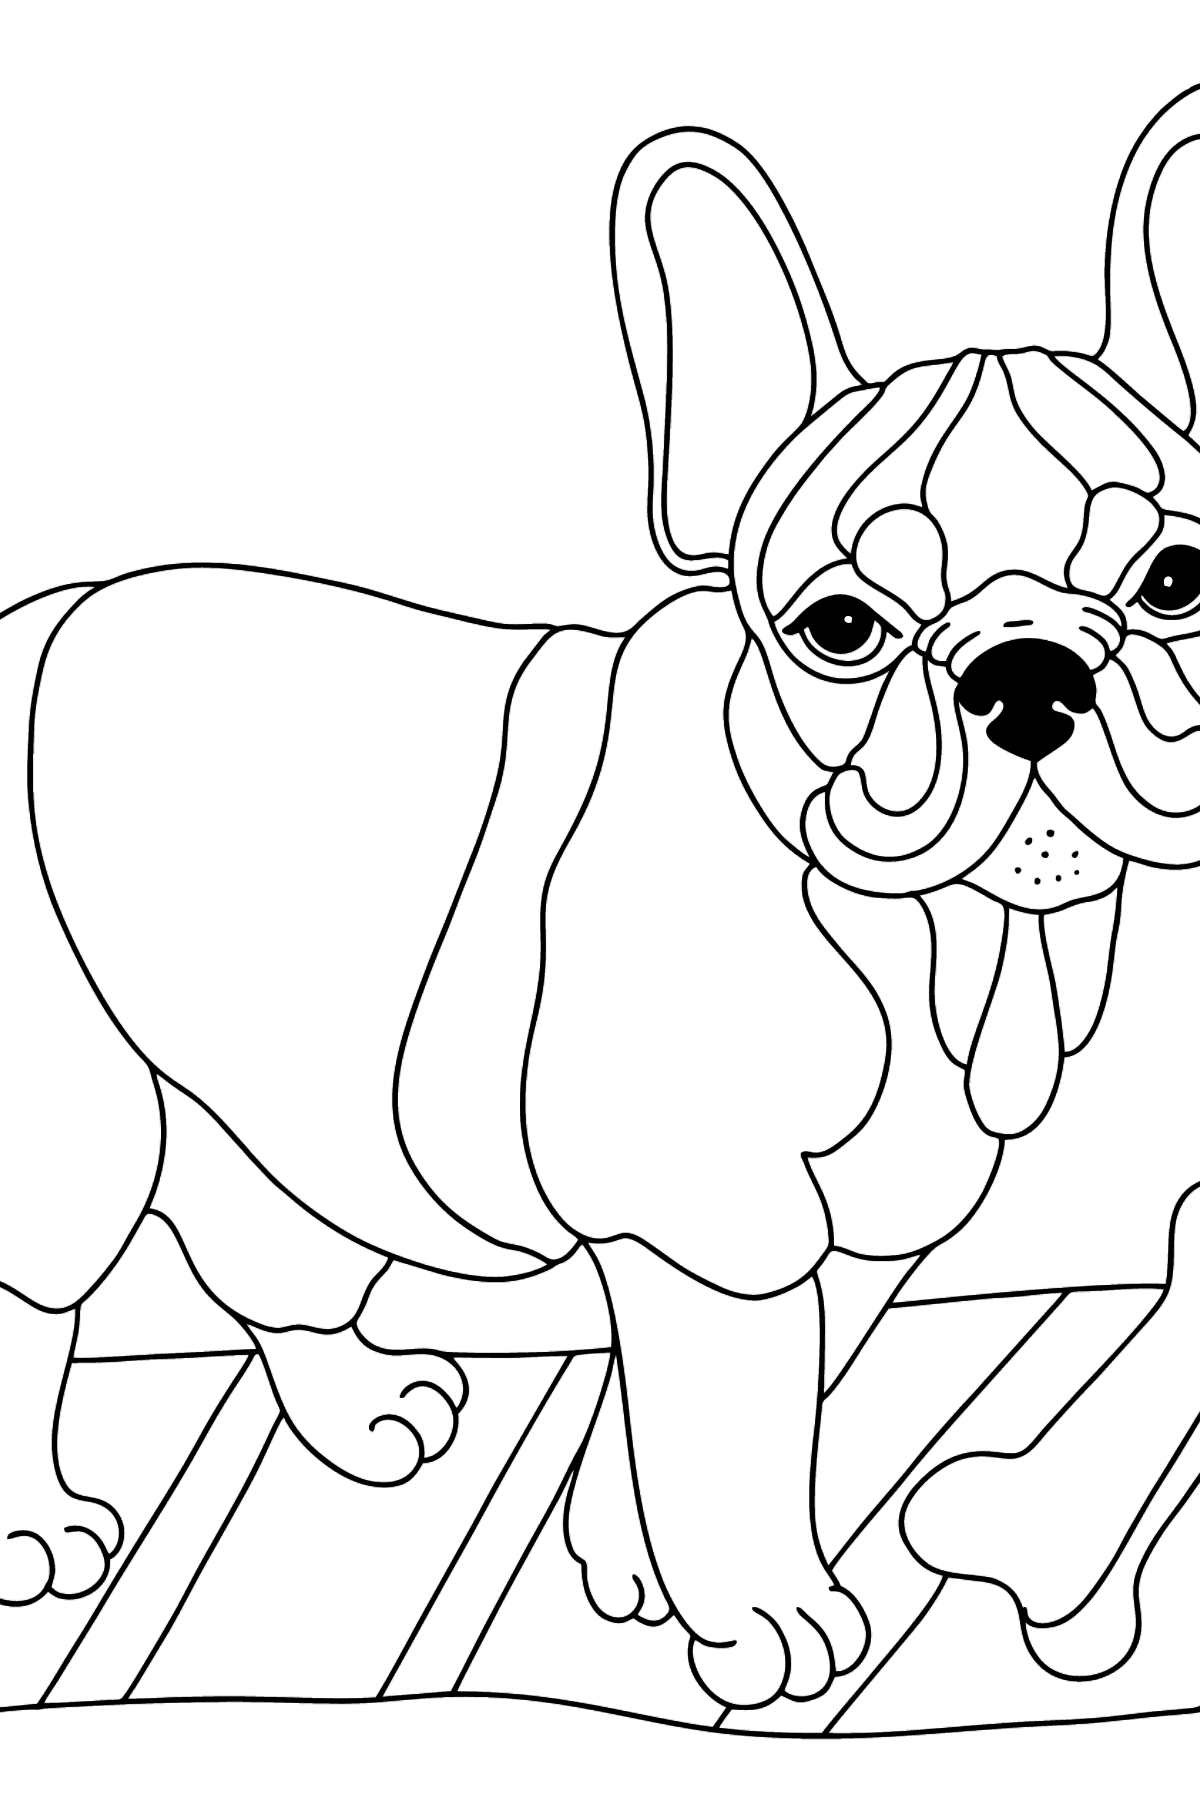 Boyama sayfası fransız bulldog (zor) - Boyamalar çocuklar için